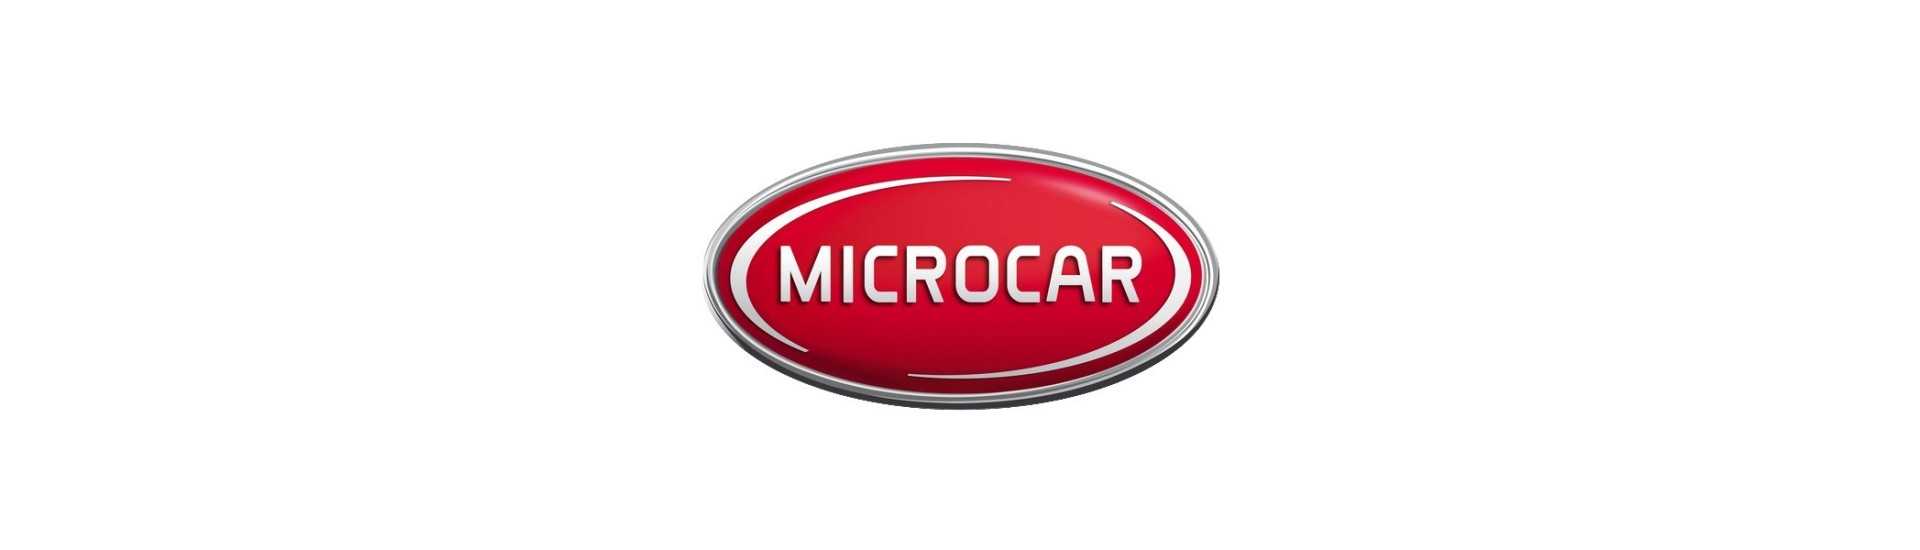 Carrosserie zum besten Preis für Auto ohne Lizenz Microcar